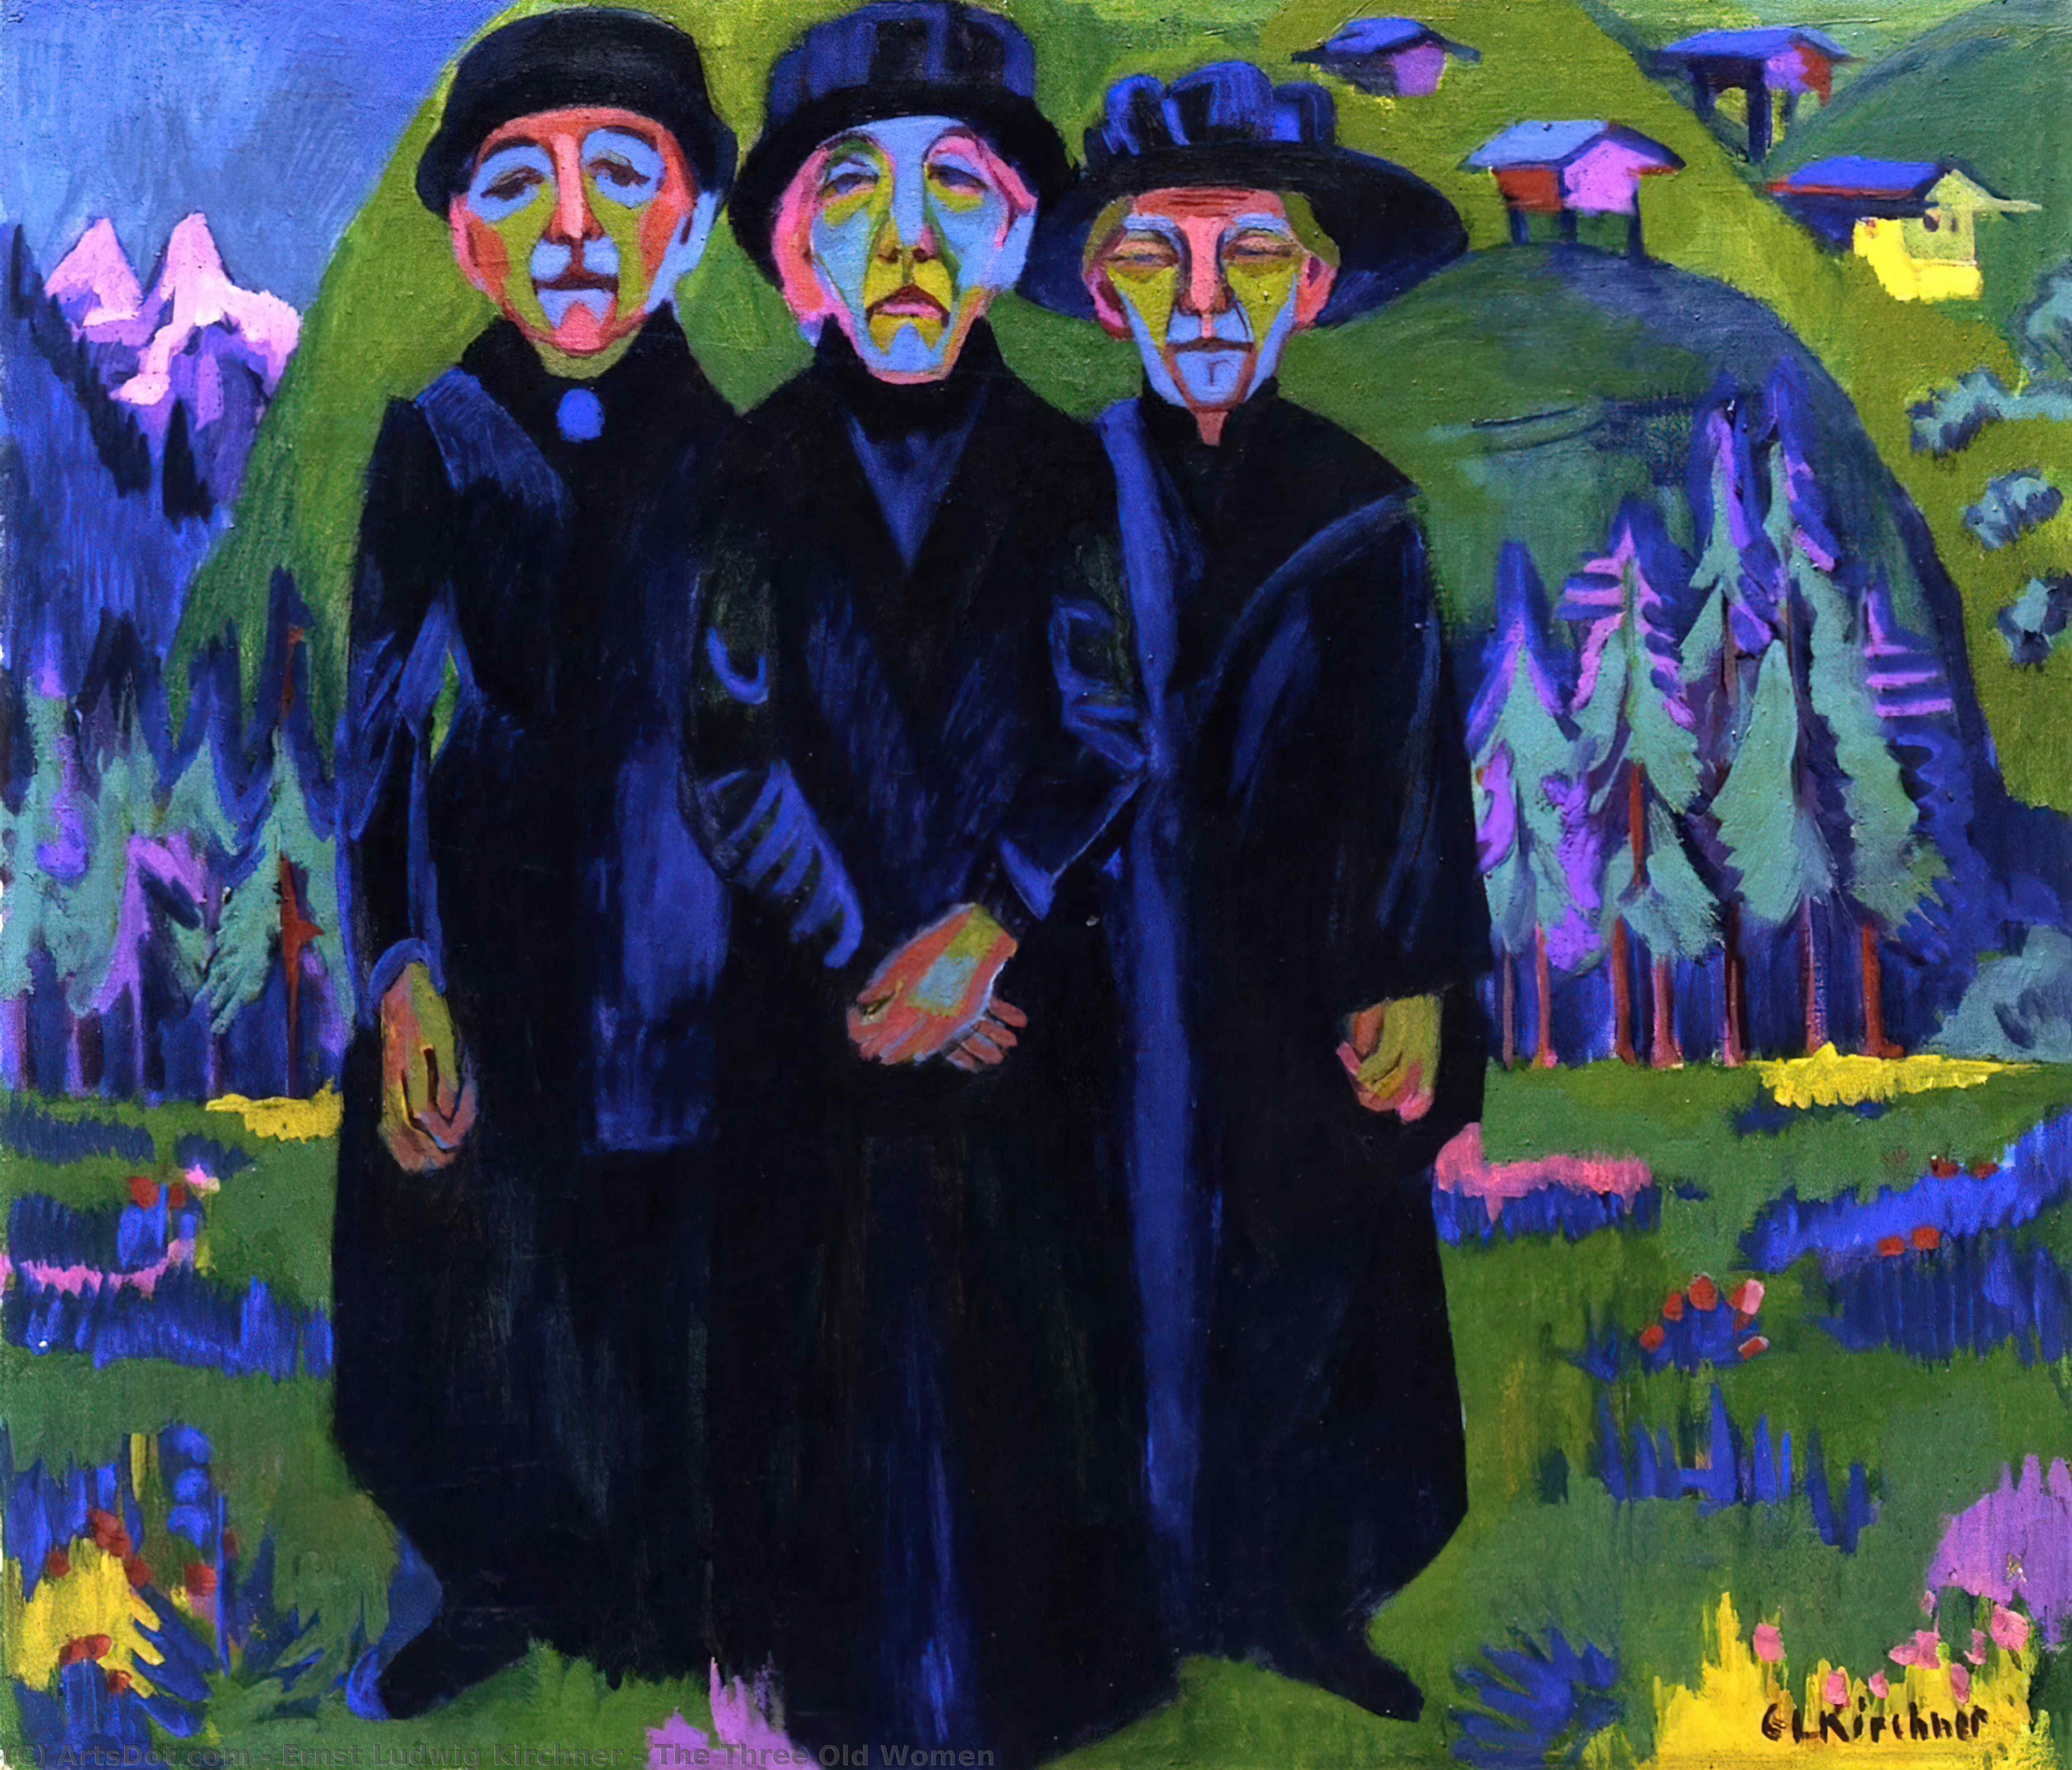 Wikioo.org - Bách khoa toàn thư về mỹ thuật - Vẽ tranh, Tác phẩm nghệ thuật Ernst Ludwig Kirchner - The Three Old Women